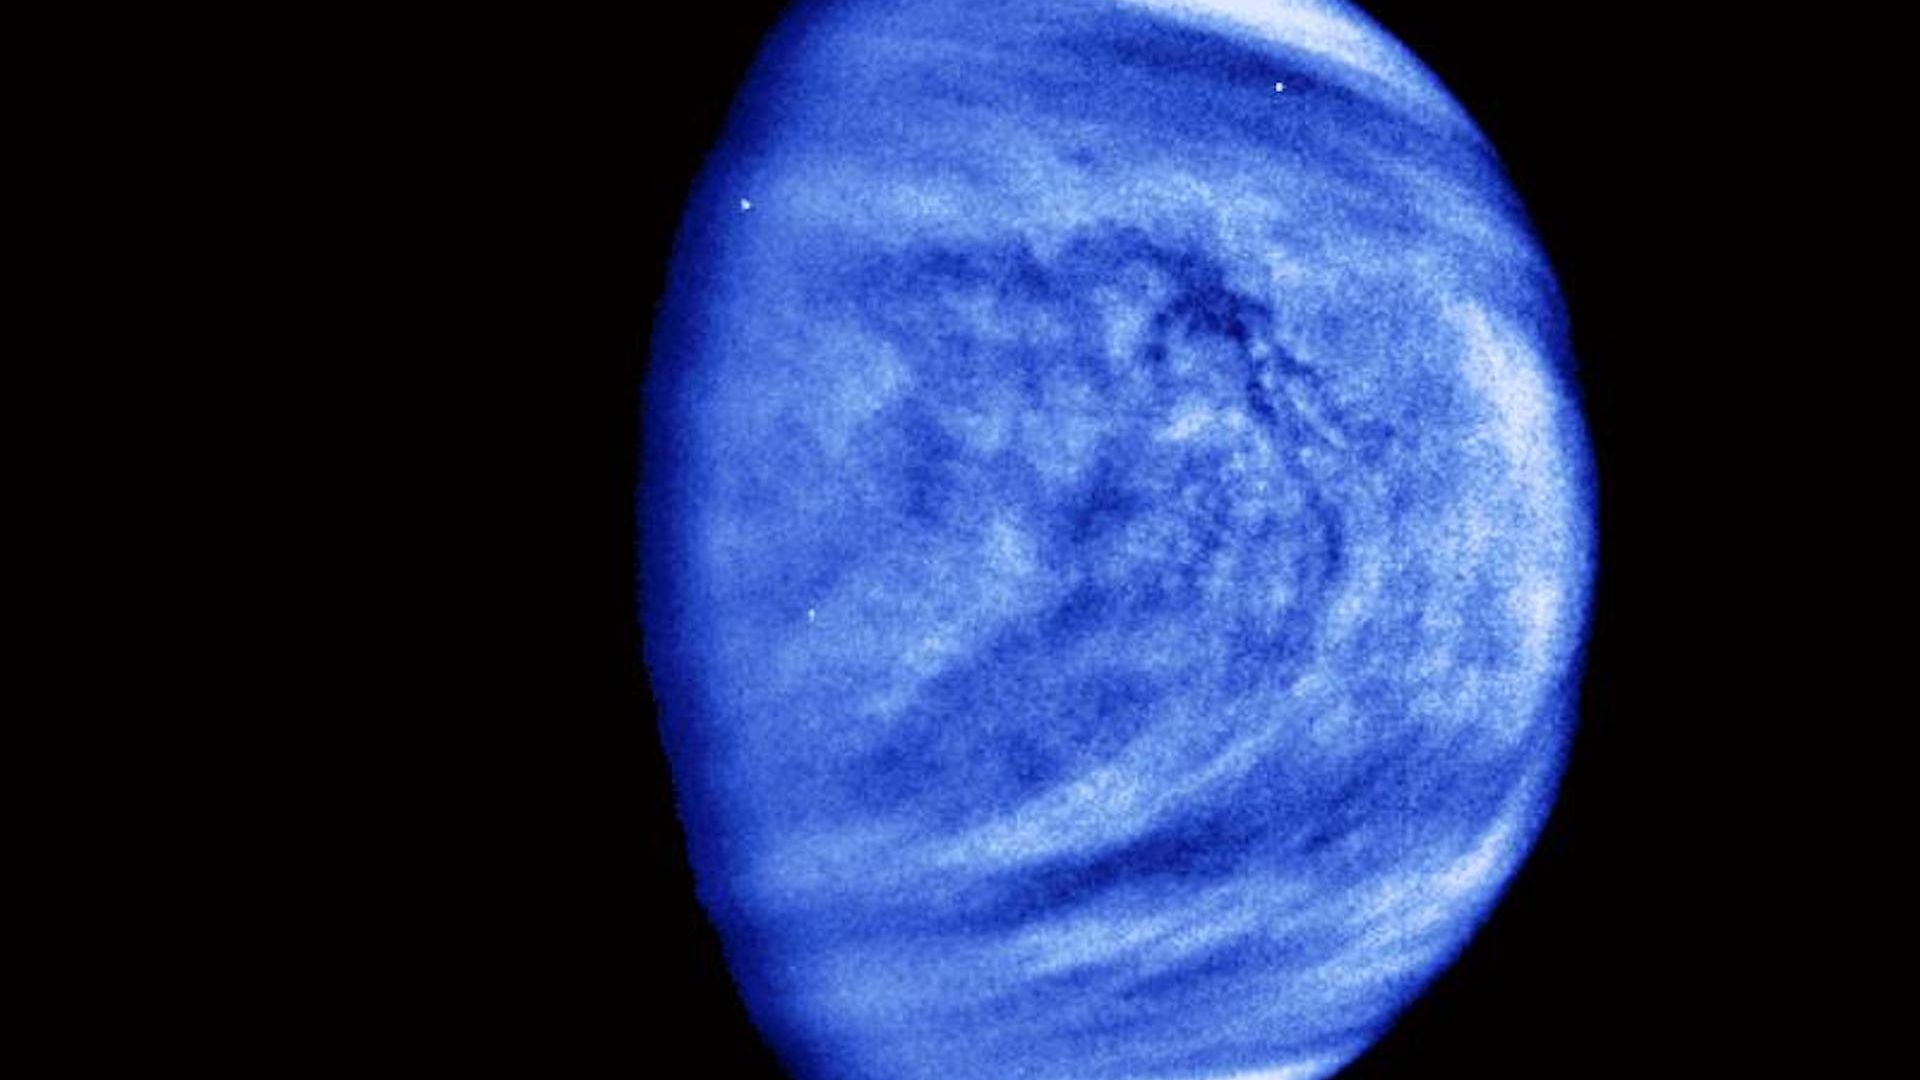 Venus as seen from orbit